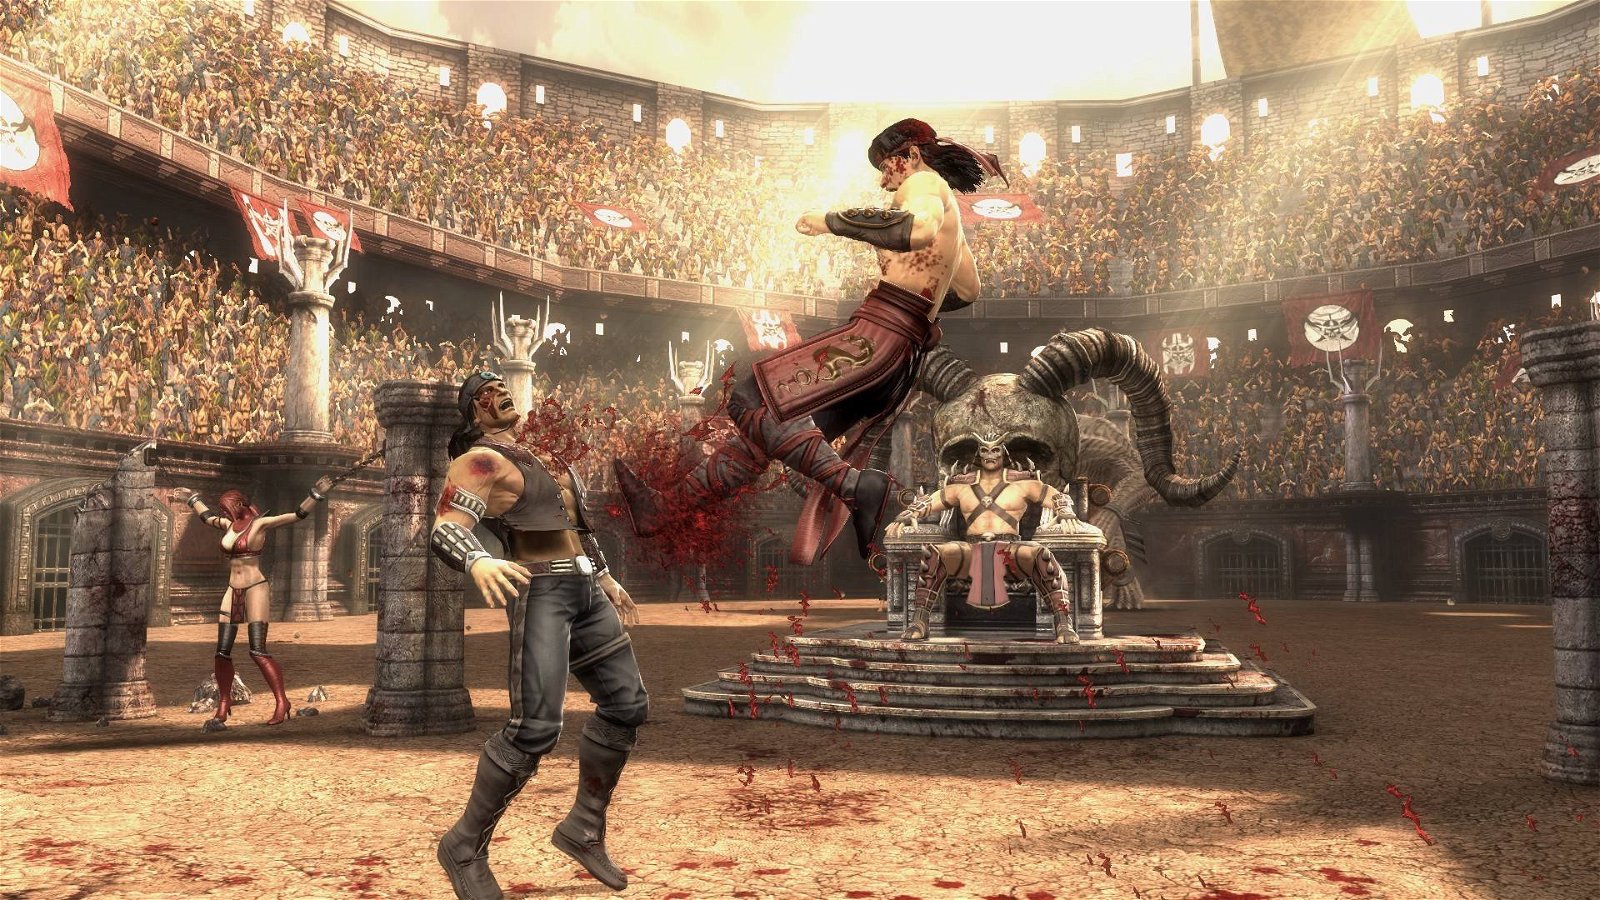 Immagine di Mortal Kombat 9, fatality sulla versione Steam: il gioco è stato rimosso